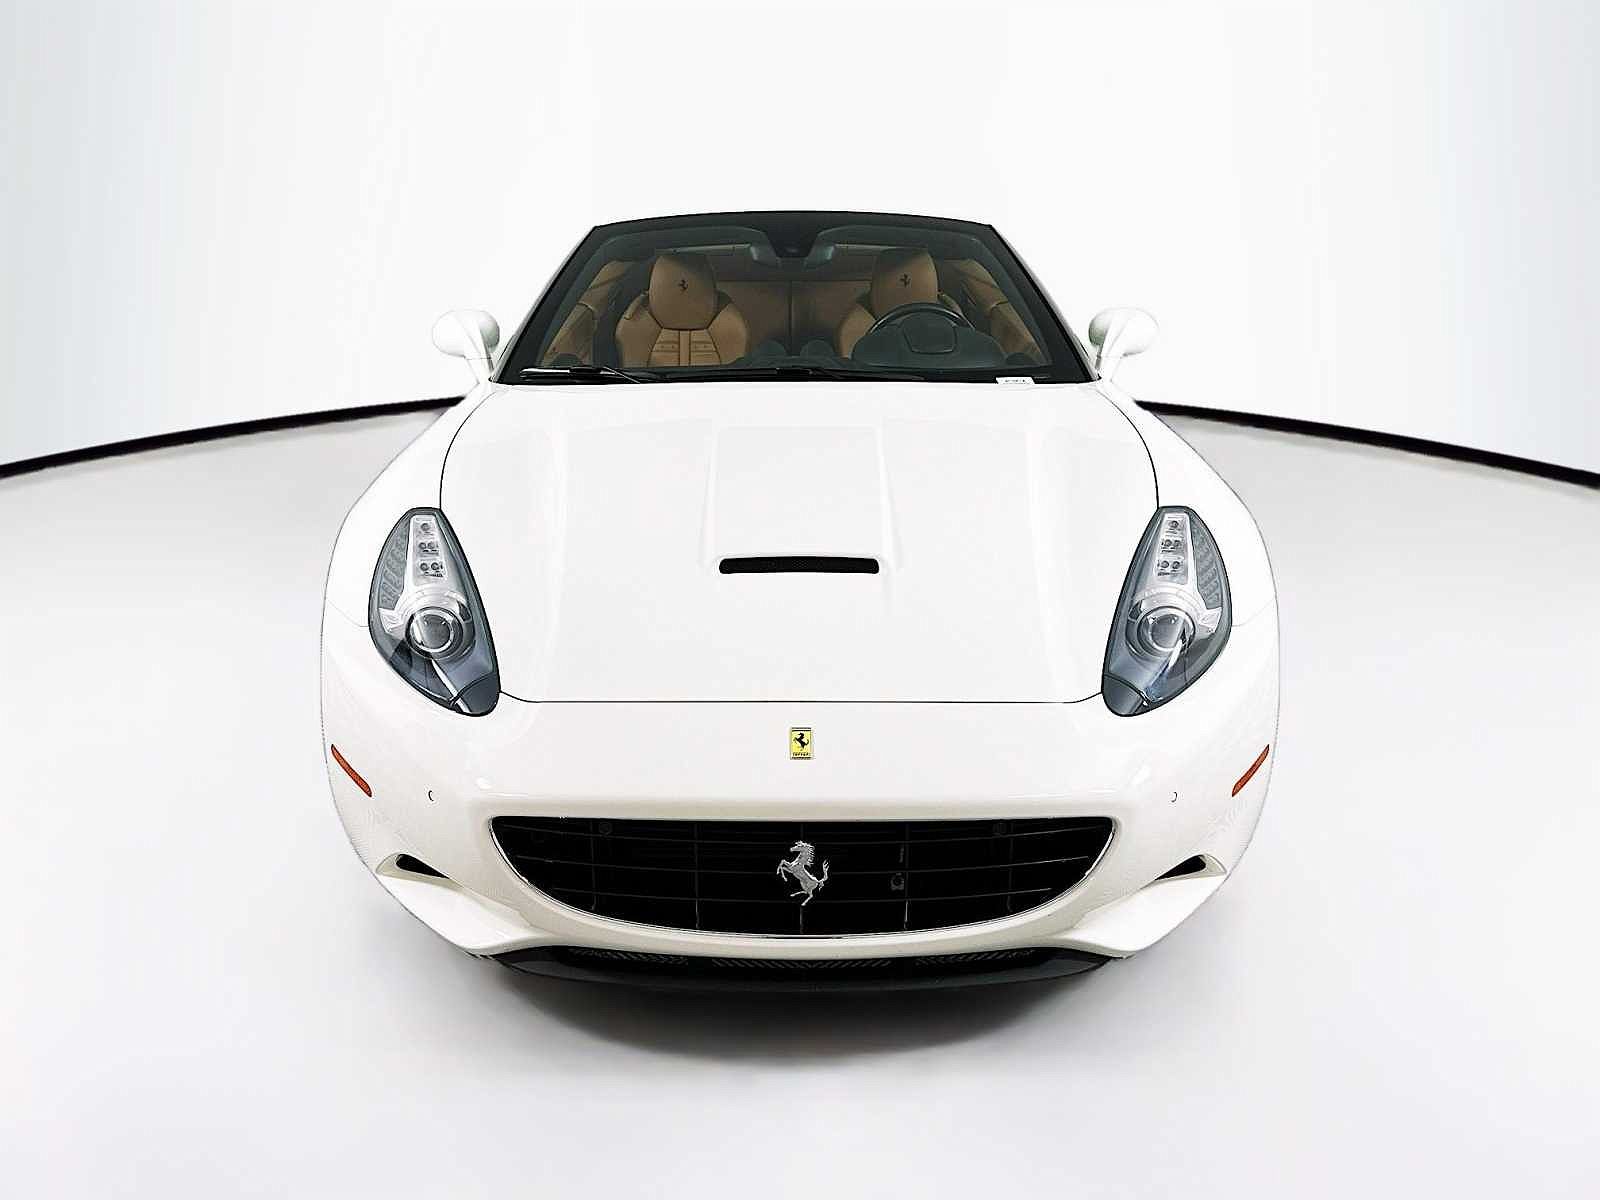 2014 Ferrari California null image 1